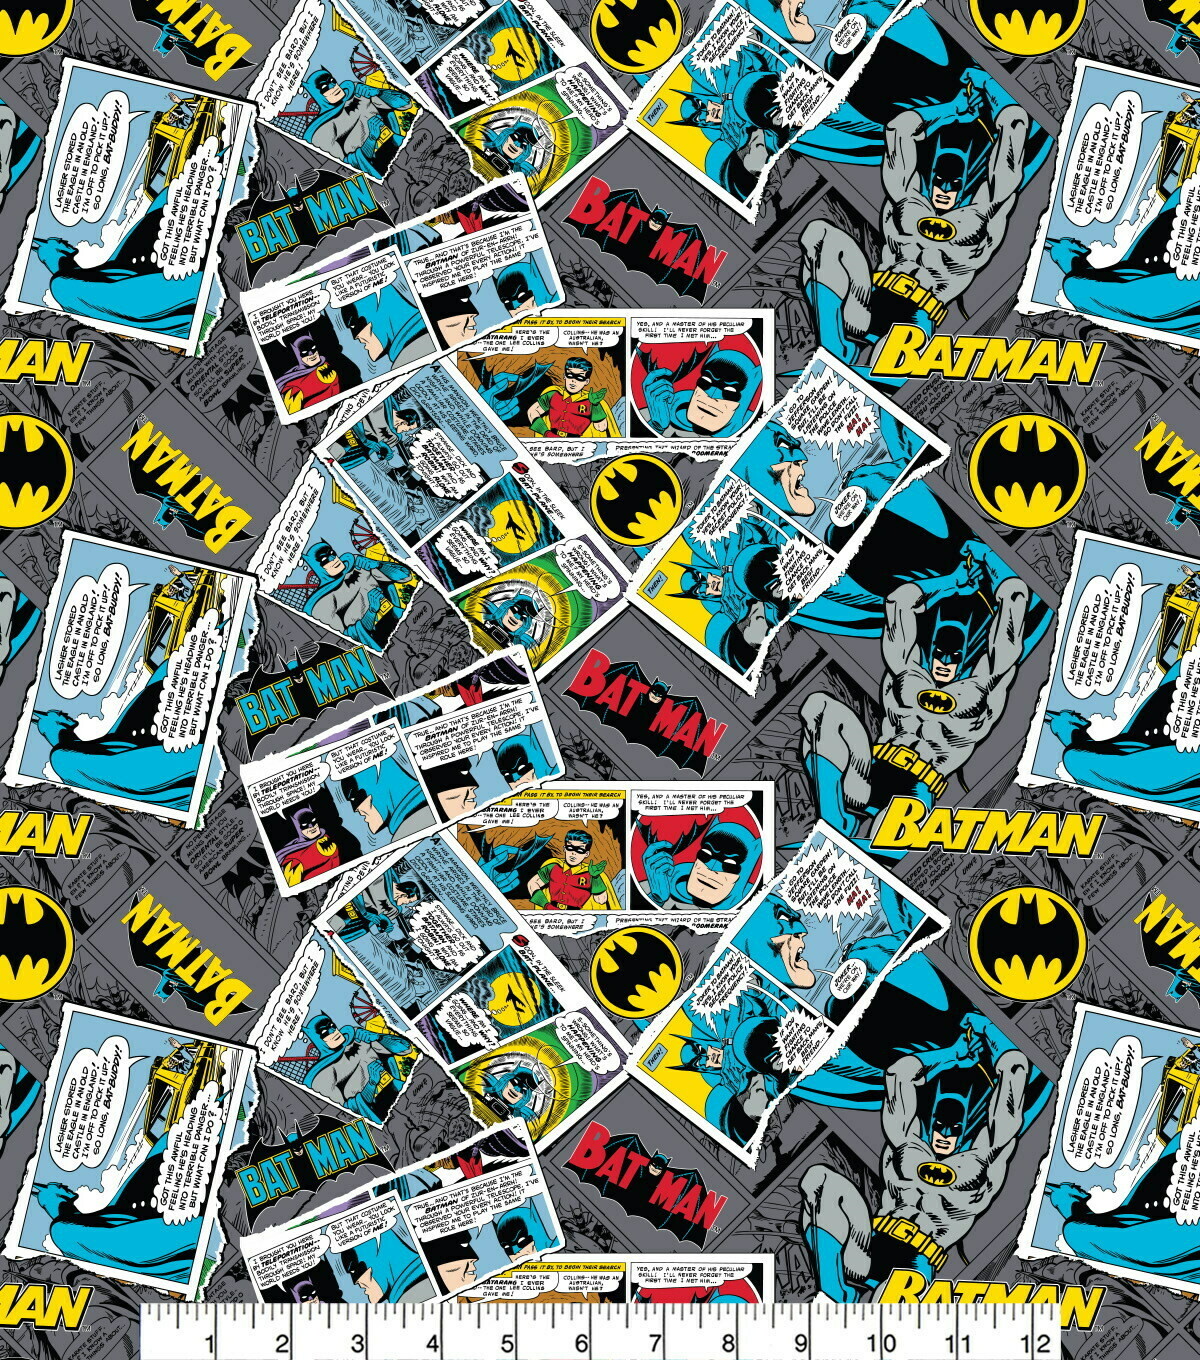 DC COMICS - Batman Collage - Cotton - END BOLT 260 CM X 110 CM